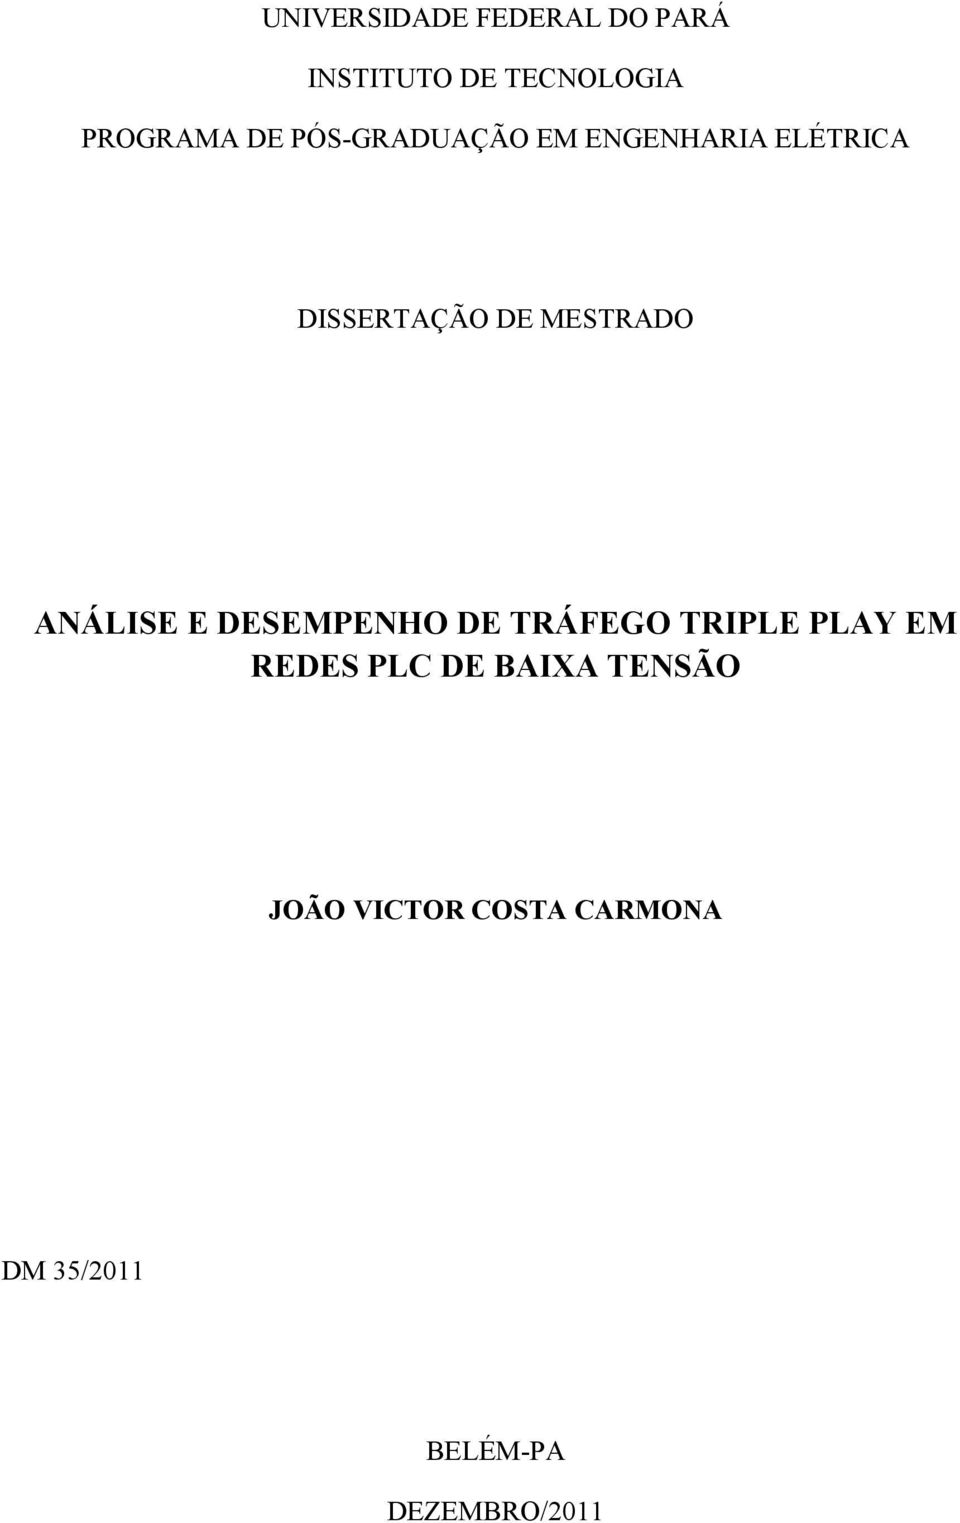 ANÁLISE E DESEMPENHO DE TRÁFEGO TRIPLE PLAY EM REDES PLC DE